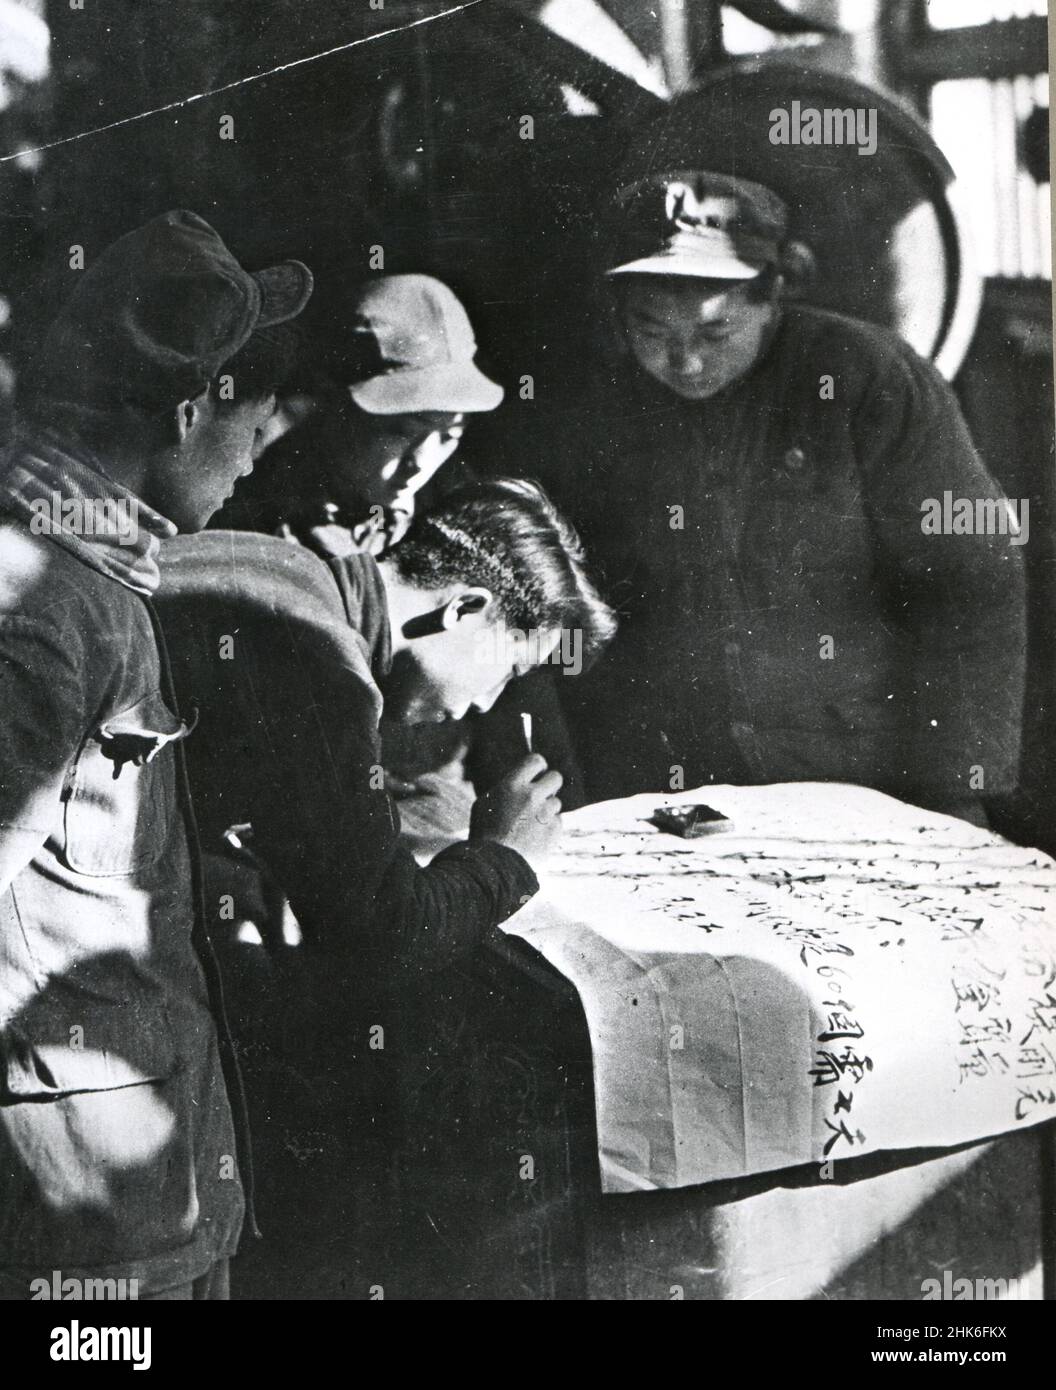 1950, China - voluntarios procedentes de una fábrica de máquinas de China del Norte registrarse para el servicio militar en Corea para ayudar a la propagación del comunismo. Foto de stock